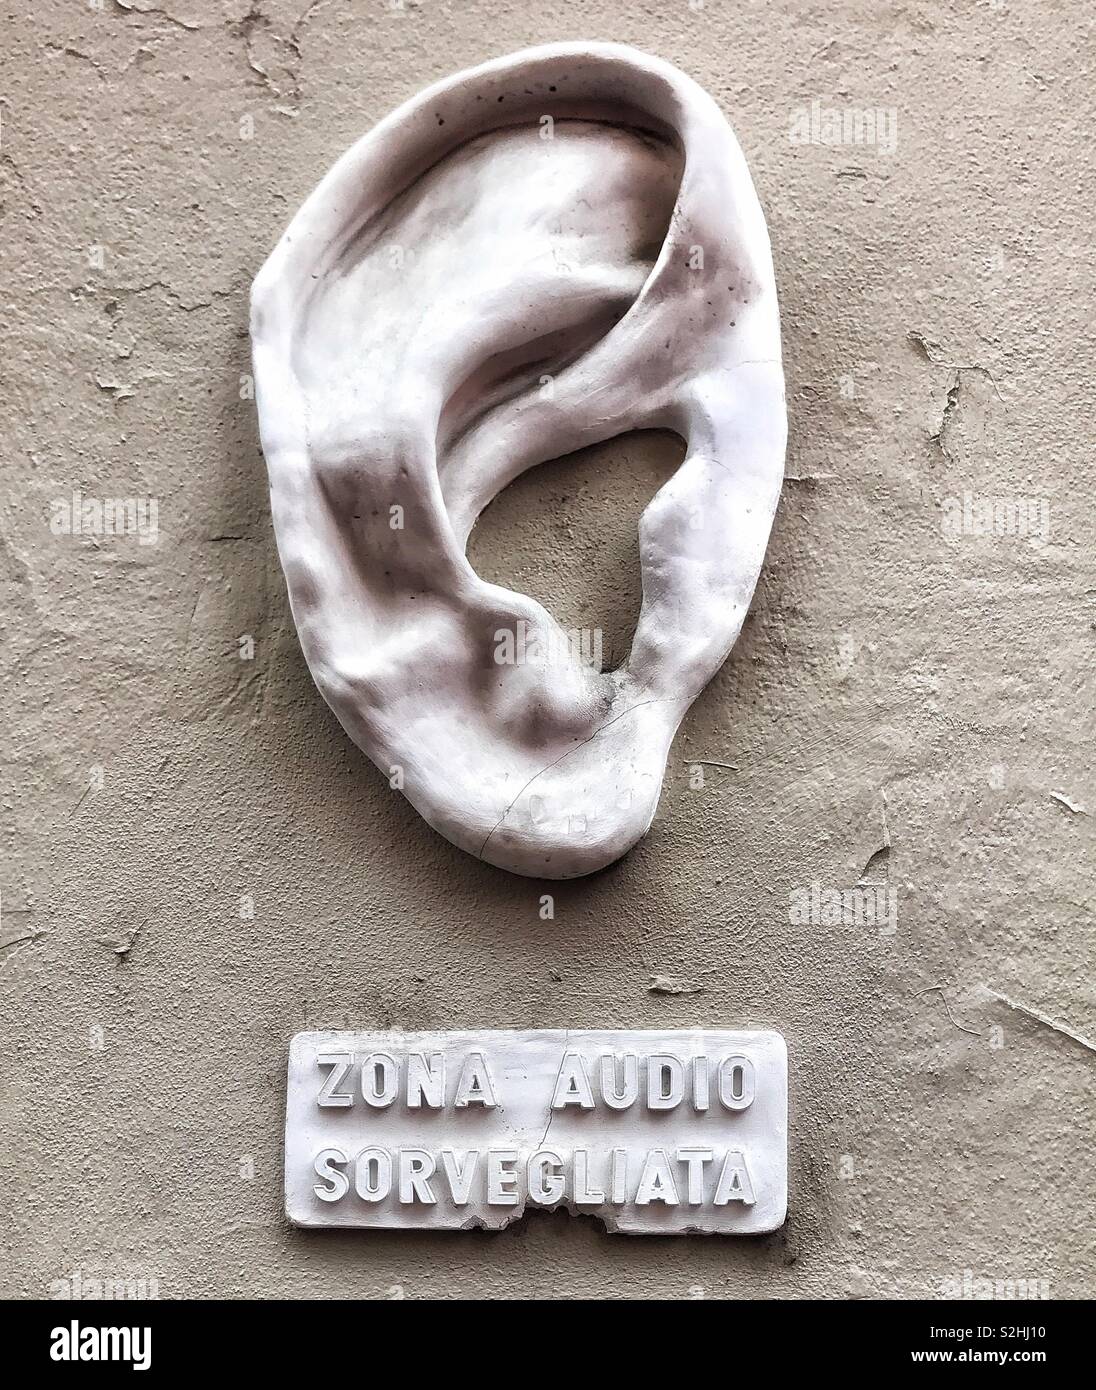 Zona sorvegliata audio, la sculpture d'une oreille collée sur un mur pour  réchauffer les gens que la zone est sous la surveillance audio, Milan ,  Italie Photo Stock - Alamy